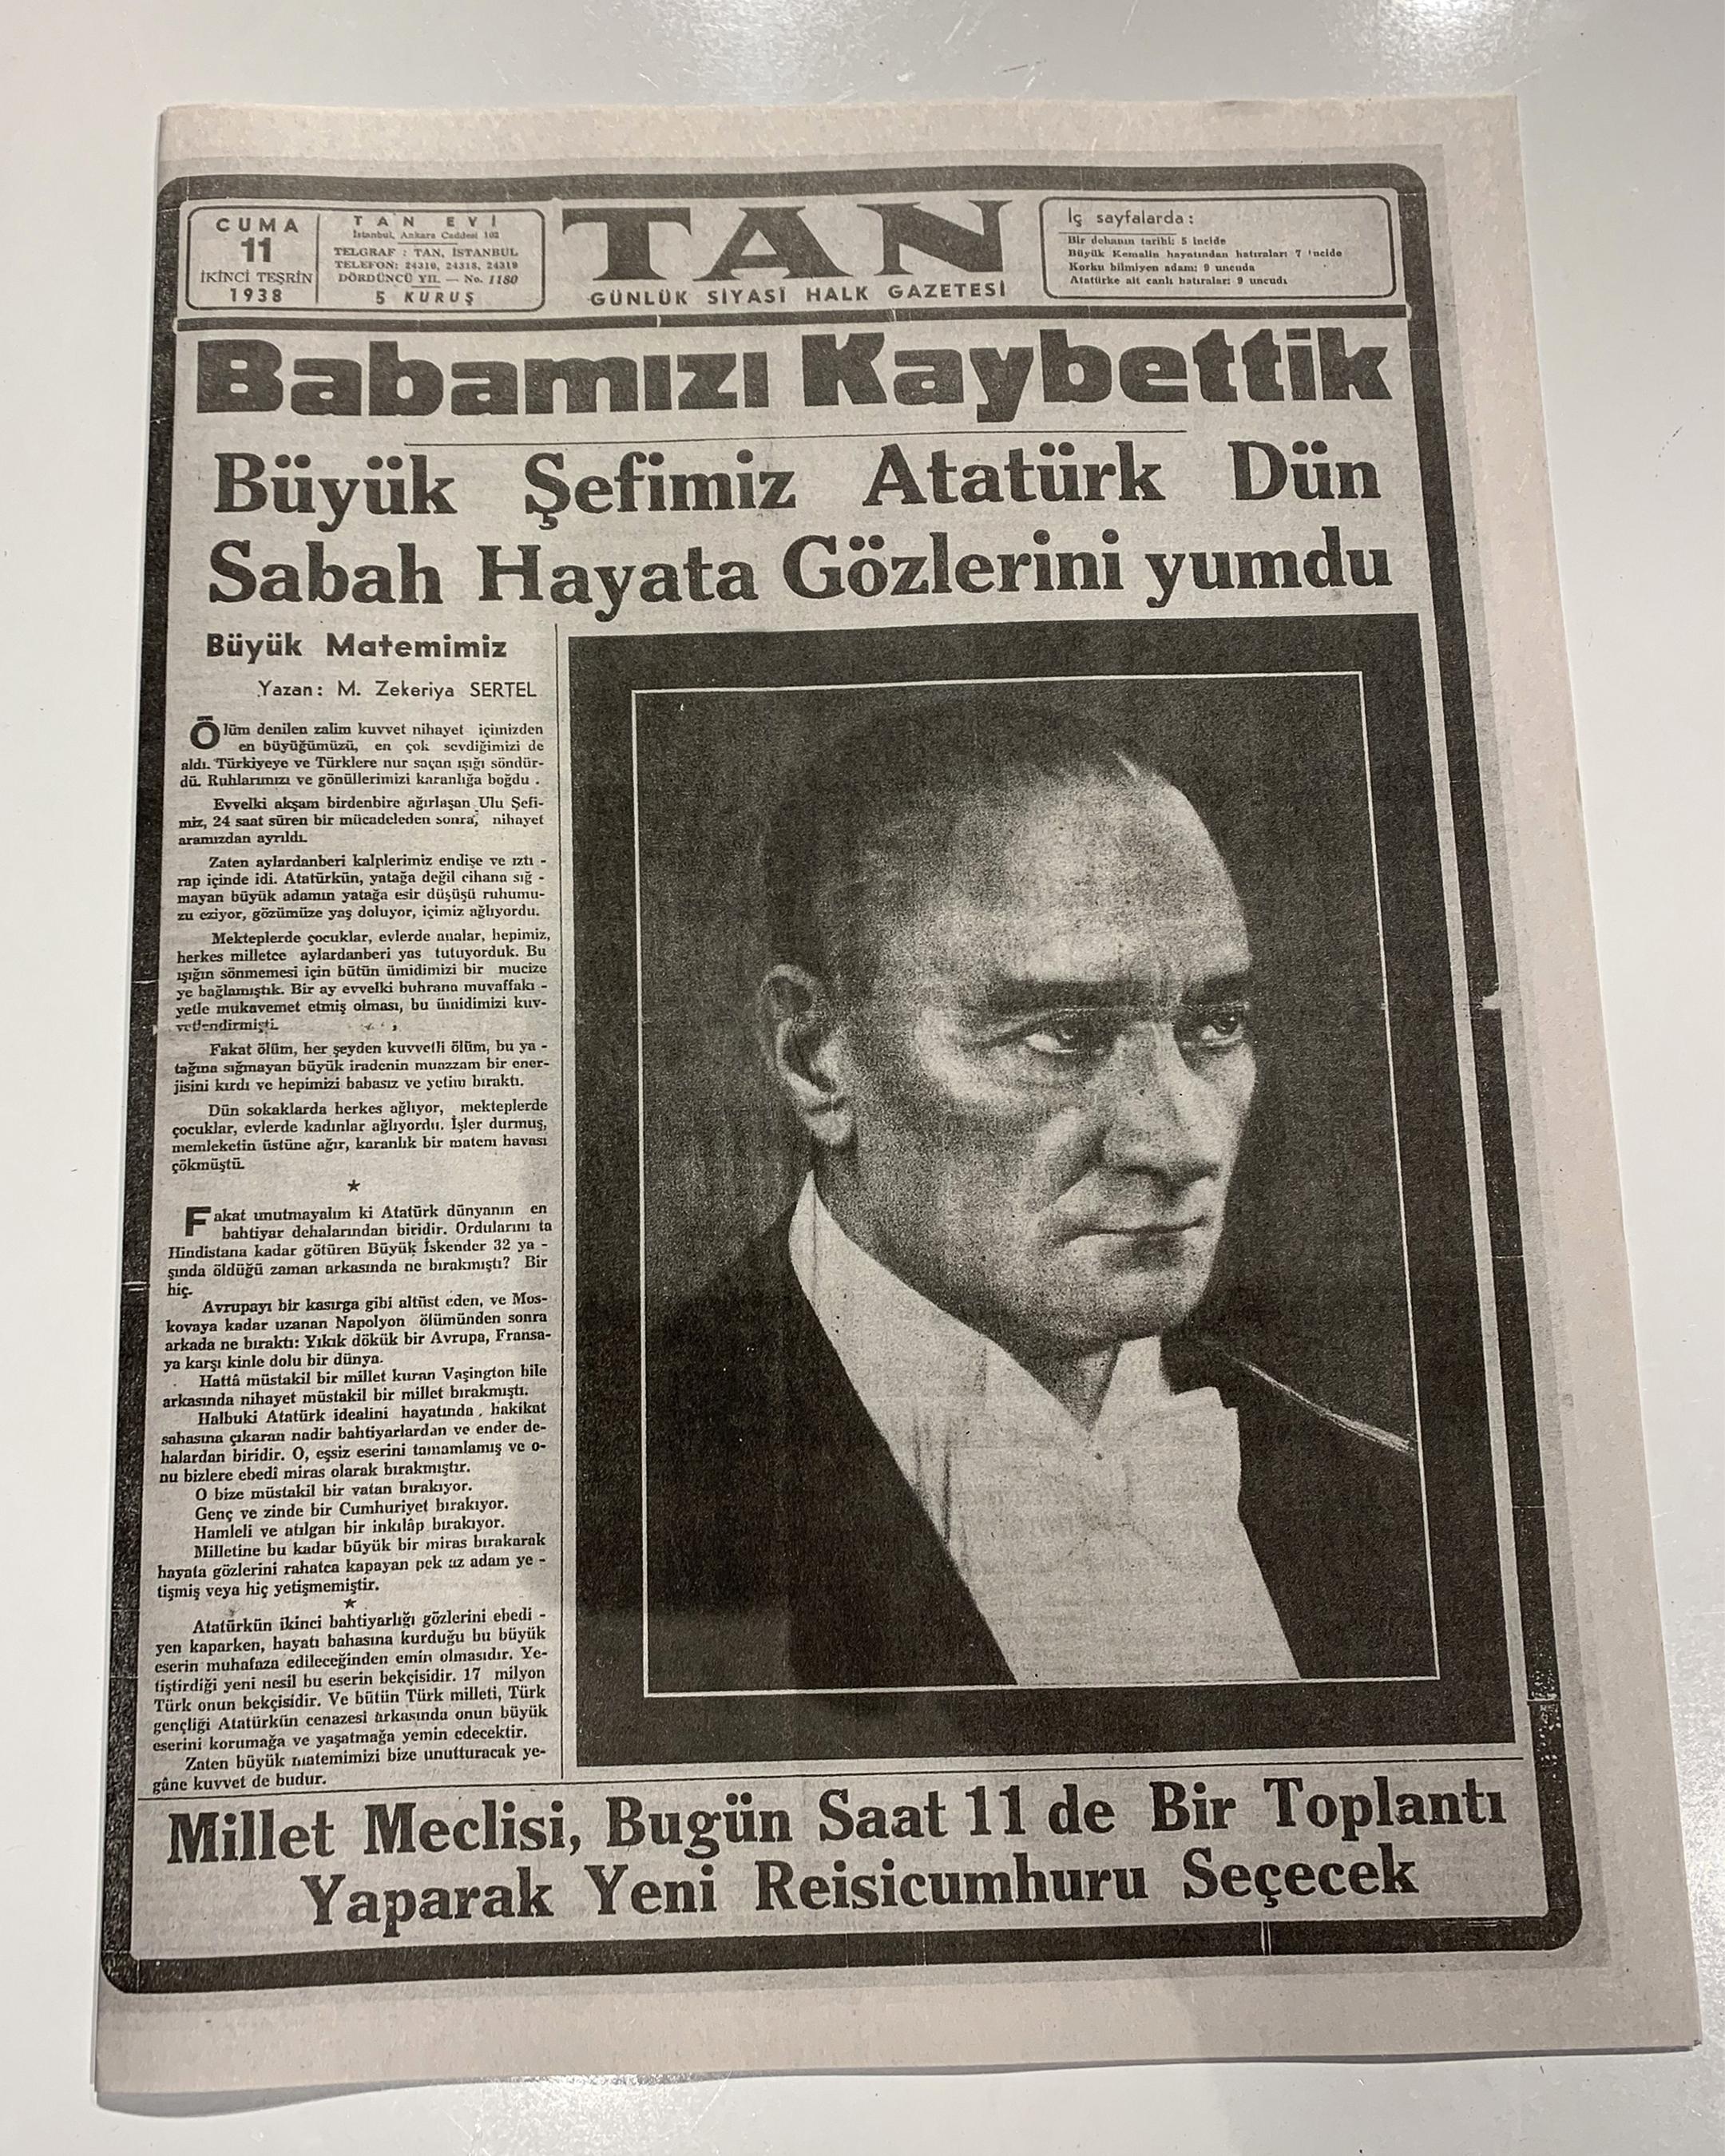 11 Kasım 1938 - "Babamızı Kaybettik" Başlıklı Tan Gazetesi